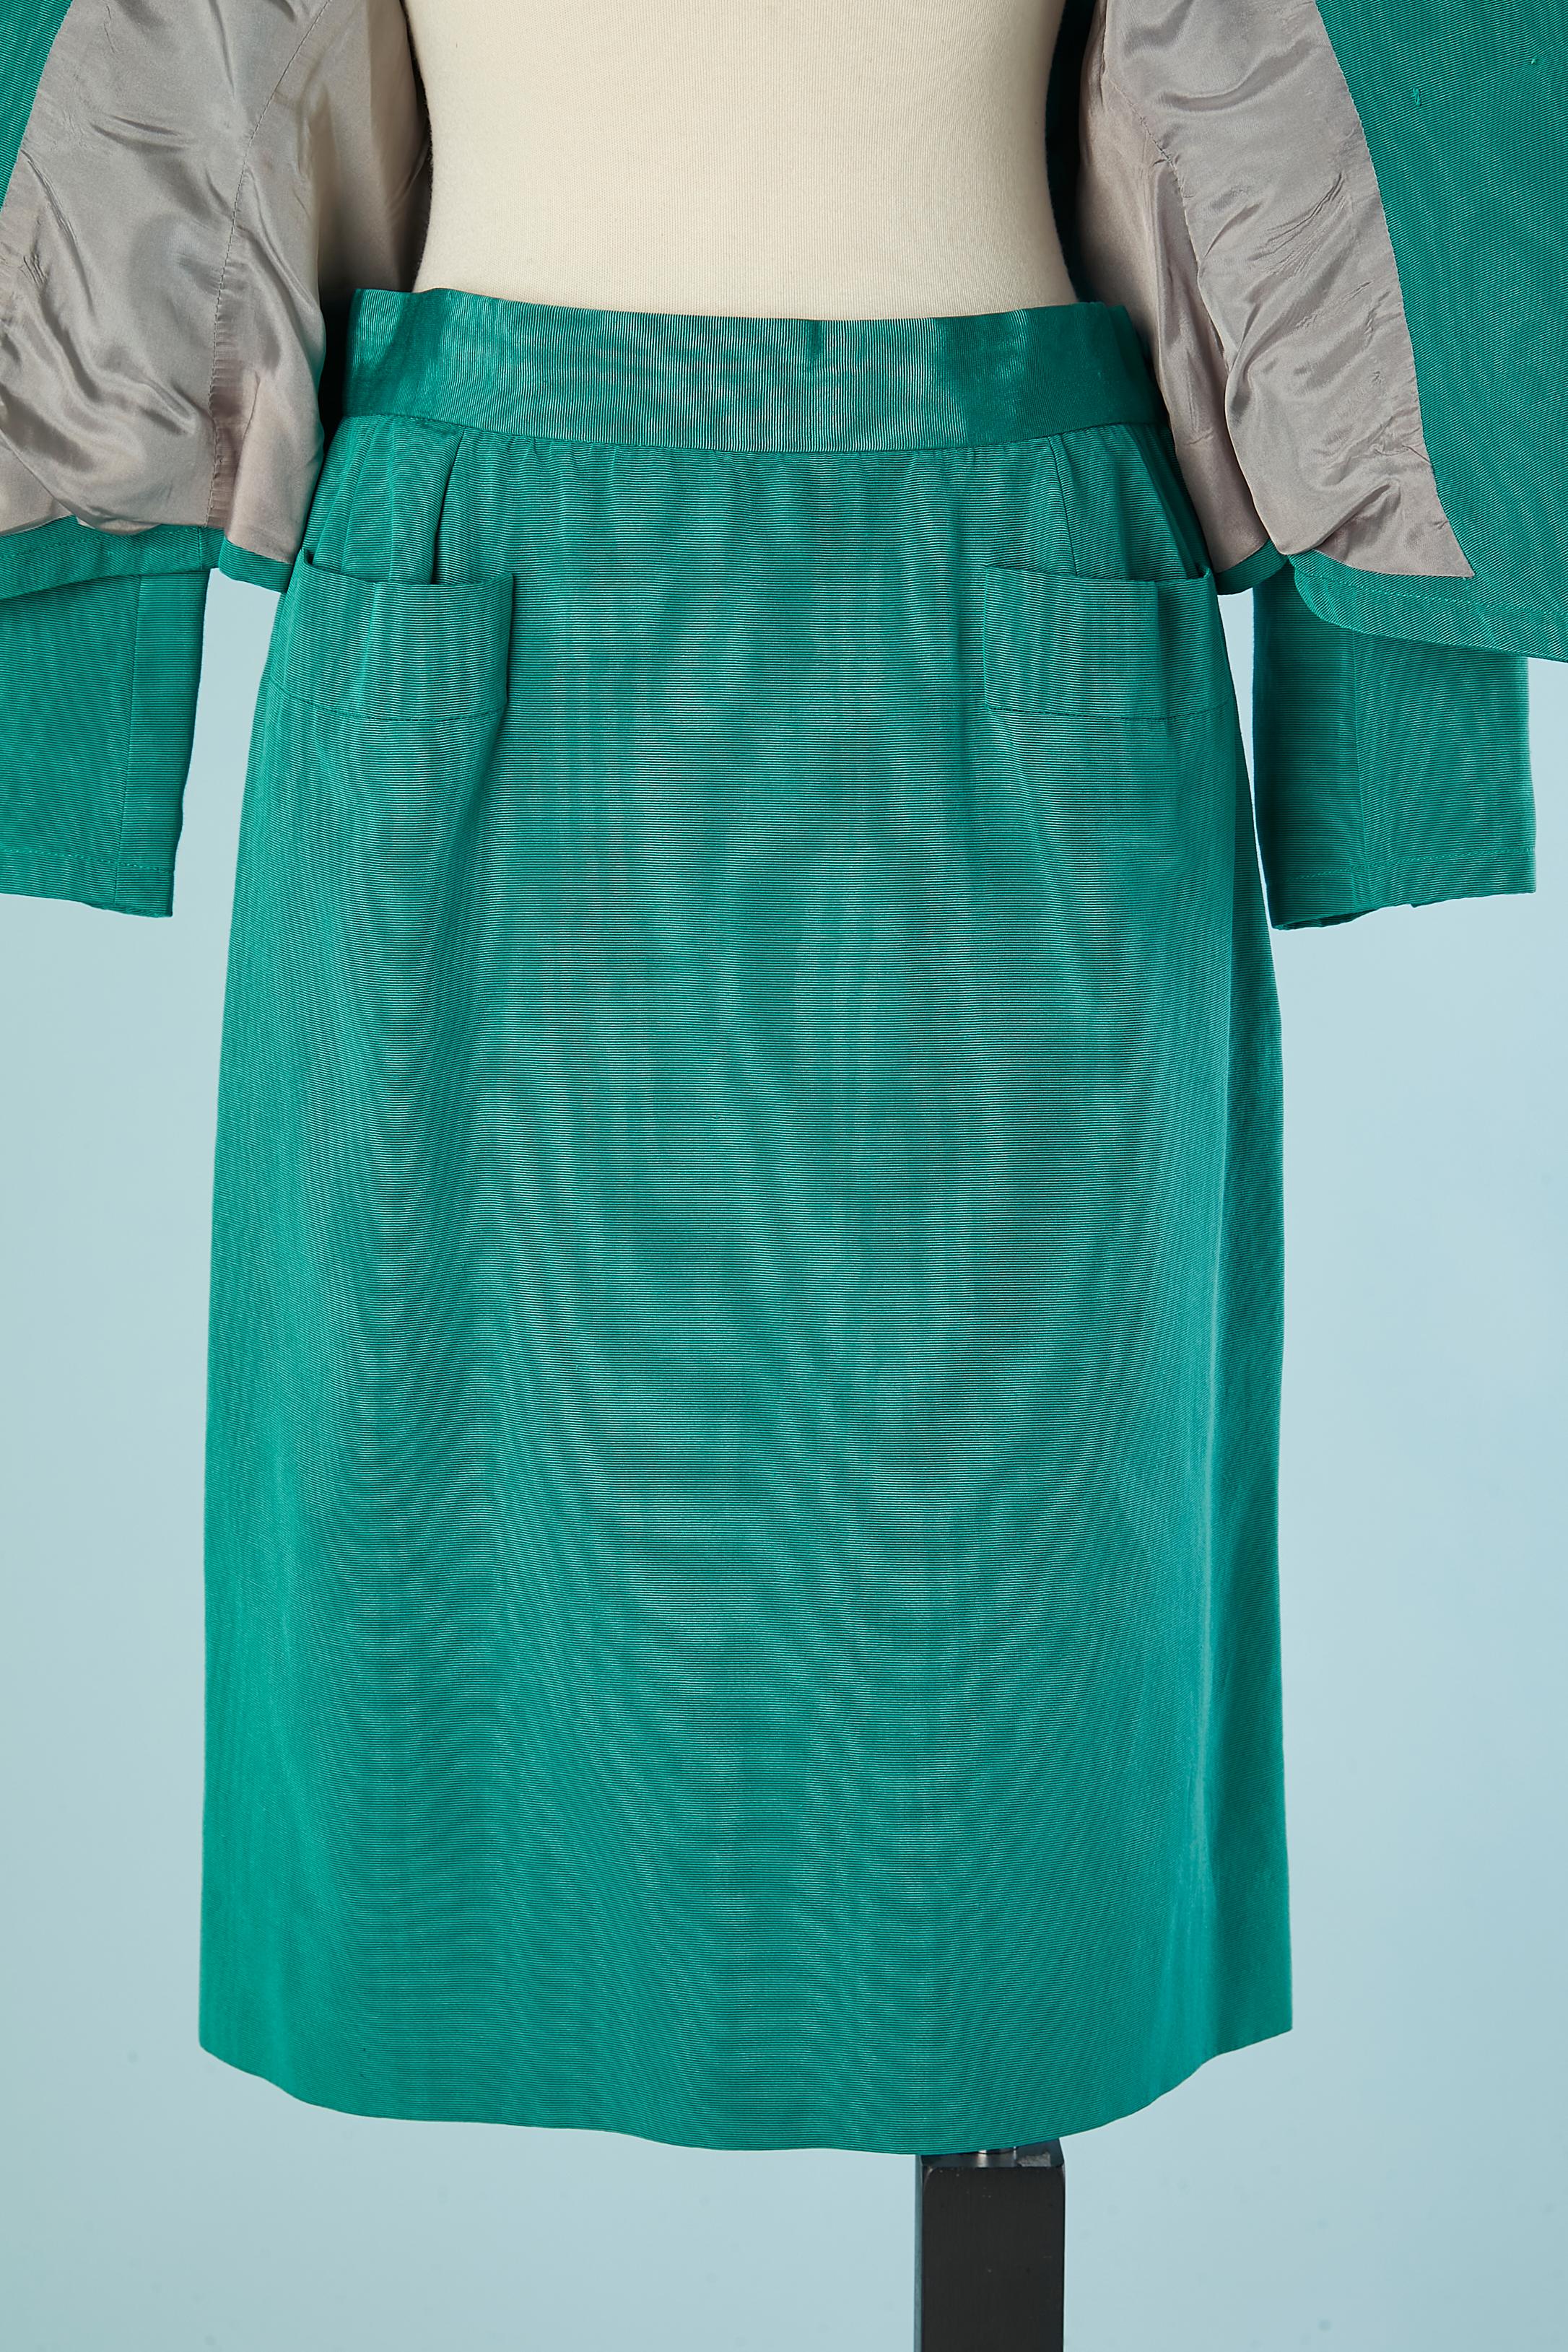 Women's or Men's Green Ottoman evening skirt-suit  Saint Laurent Rive Gauche  For Sale